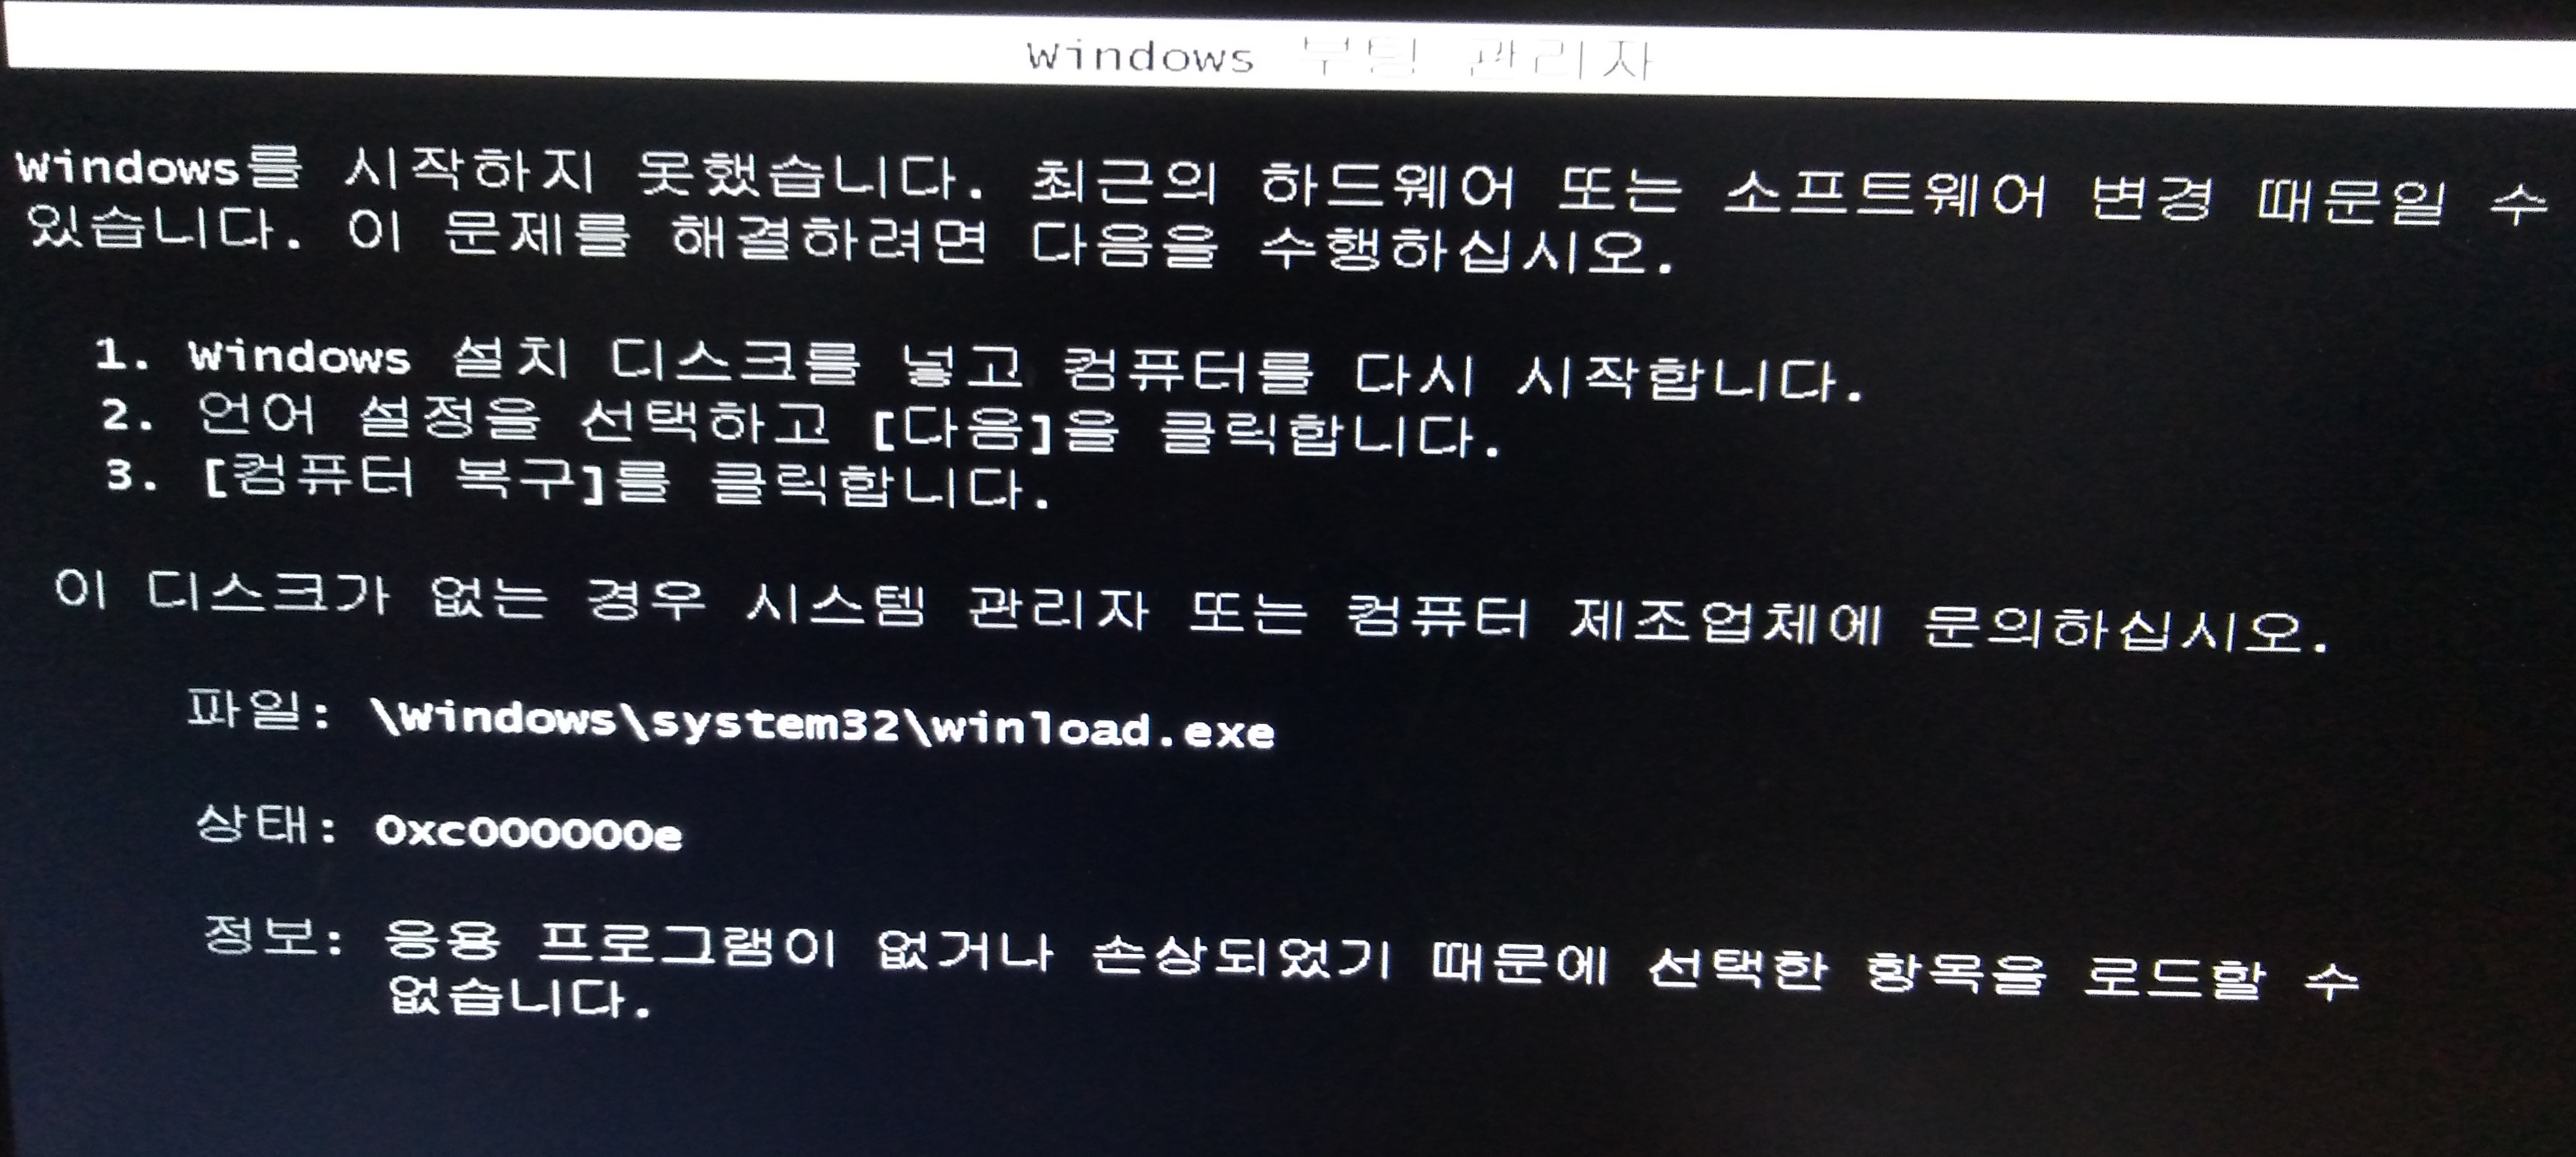 새로 설치한 윈도우7 부팅 실패 화면
windows를 시작하지 못했습니다...